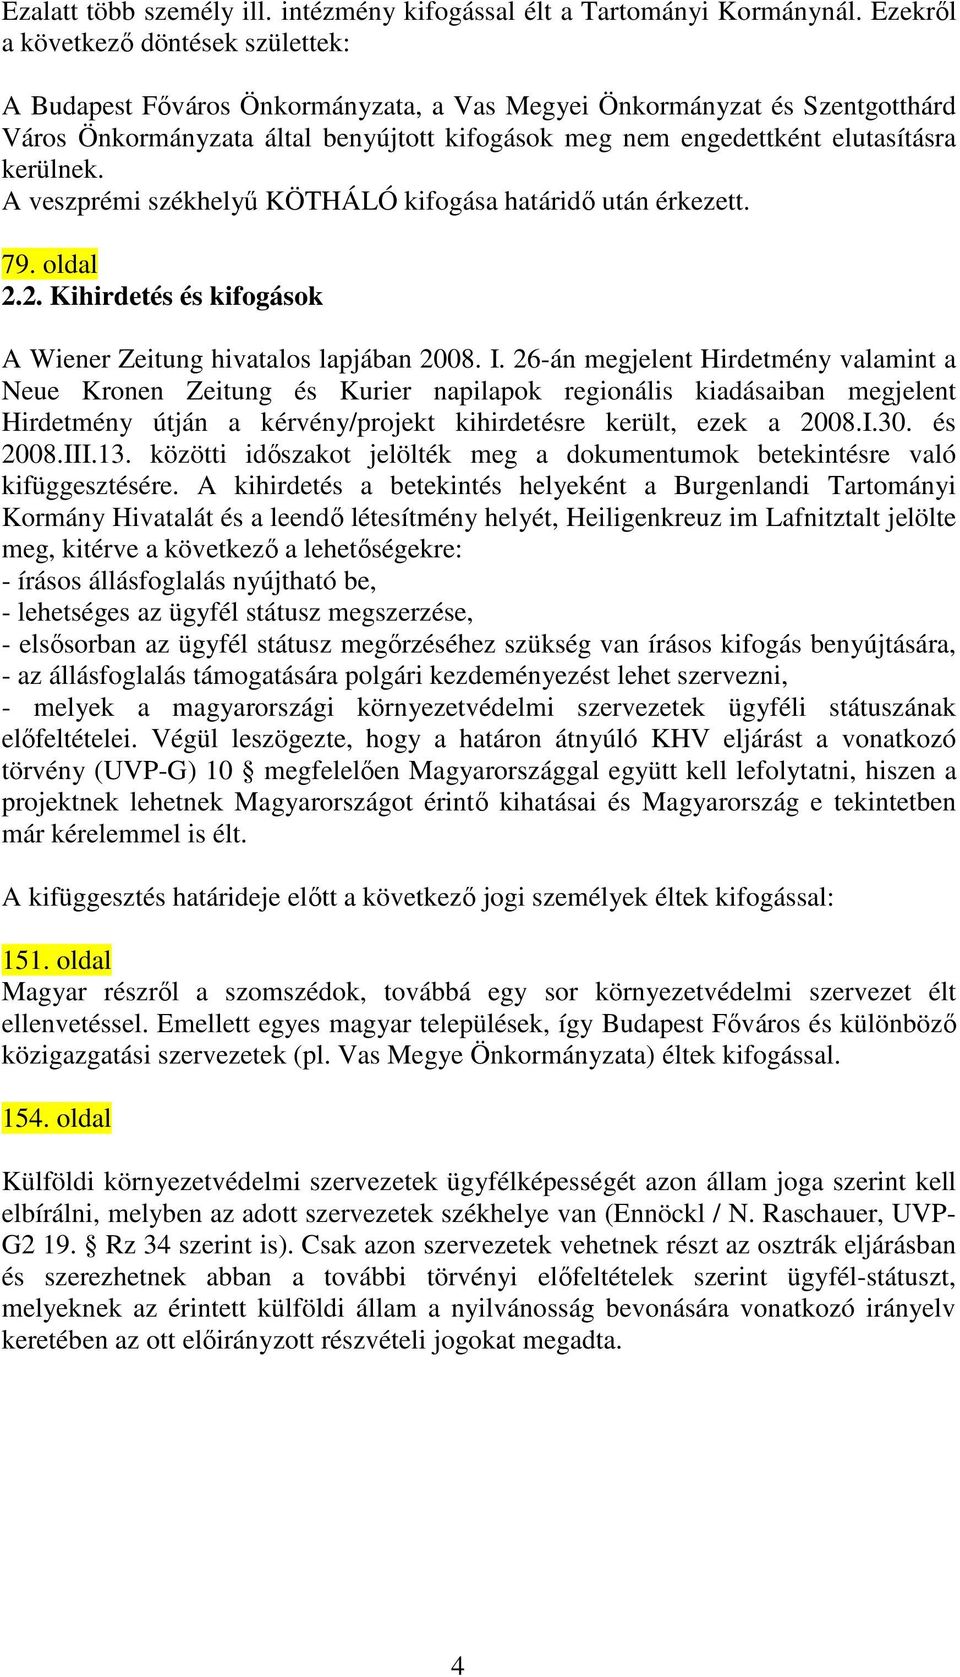 kerülnek. A veszprémi székhelyő KÖTHÁLÓ kifogása határidı után érkezett. 79. oldal 2.2. Kihirdetés és kifogások A Wiener Zeitung hivatalos lapjában 2008. I.